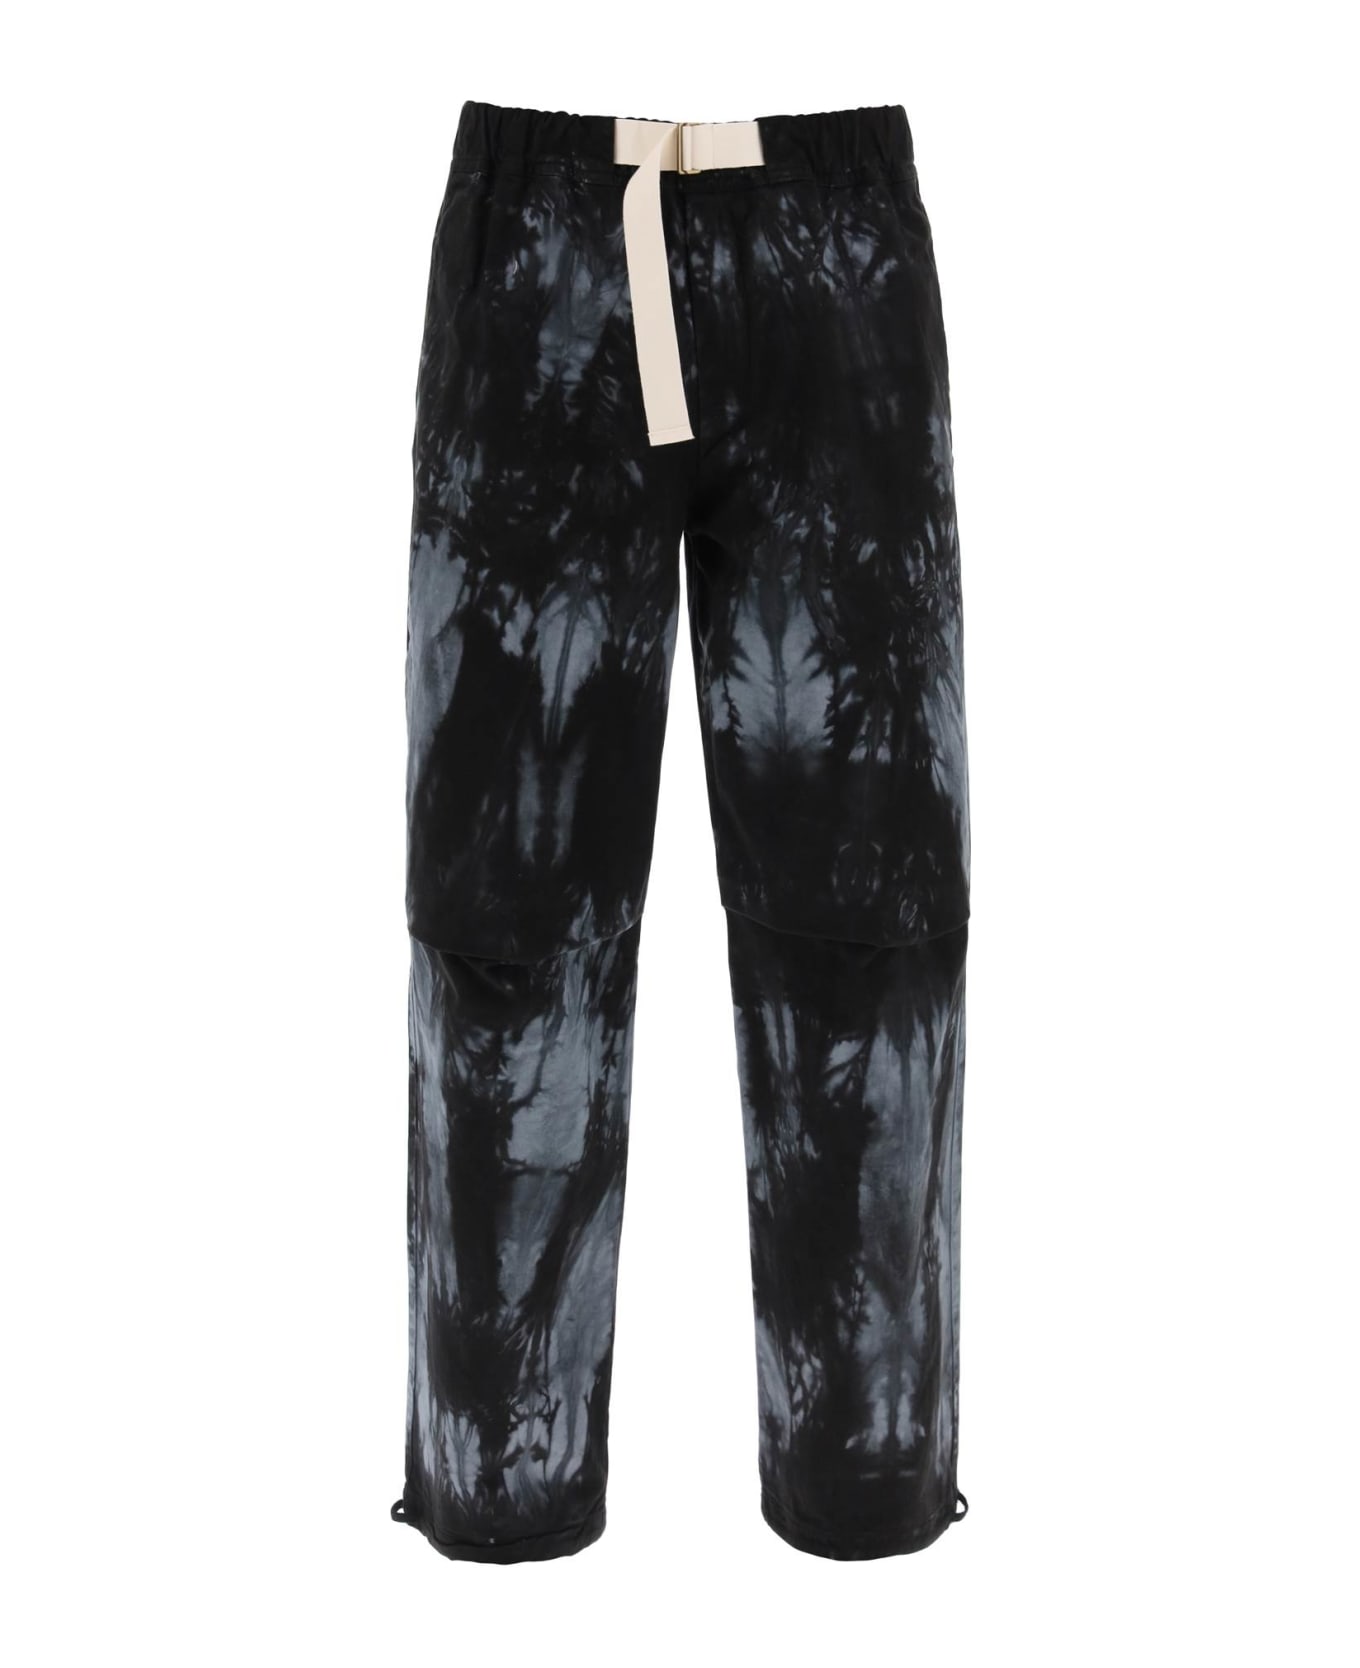 DARKPARK Jordan Tie-dye Pants - BLACK GREY (Grey)